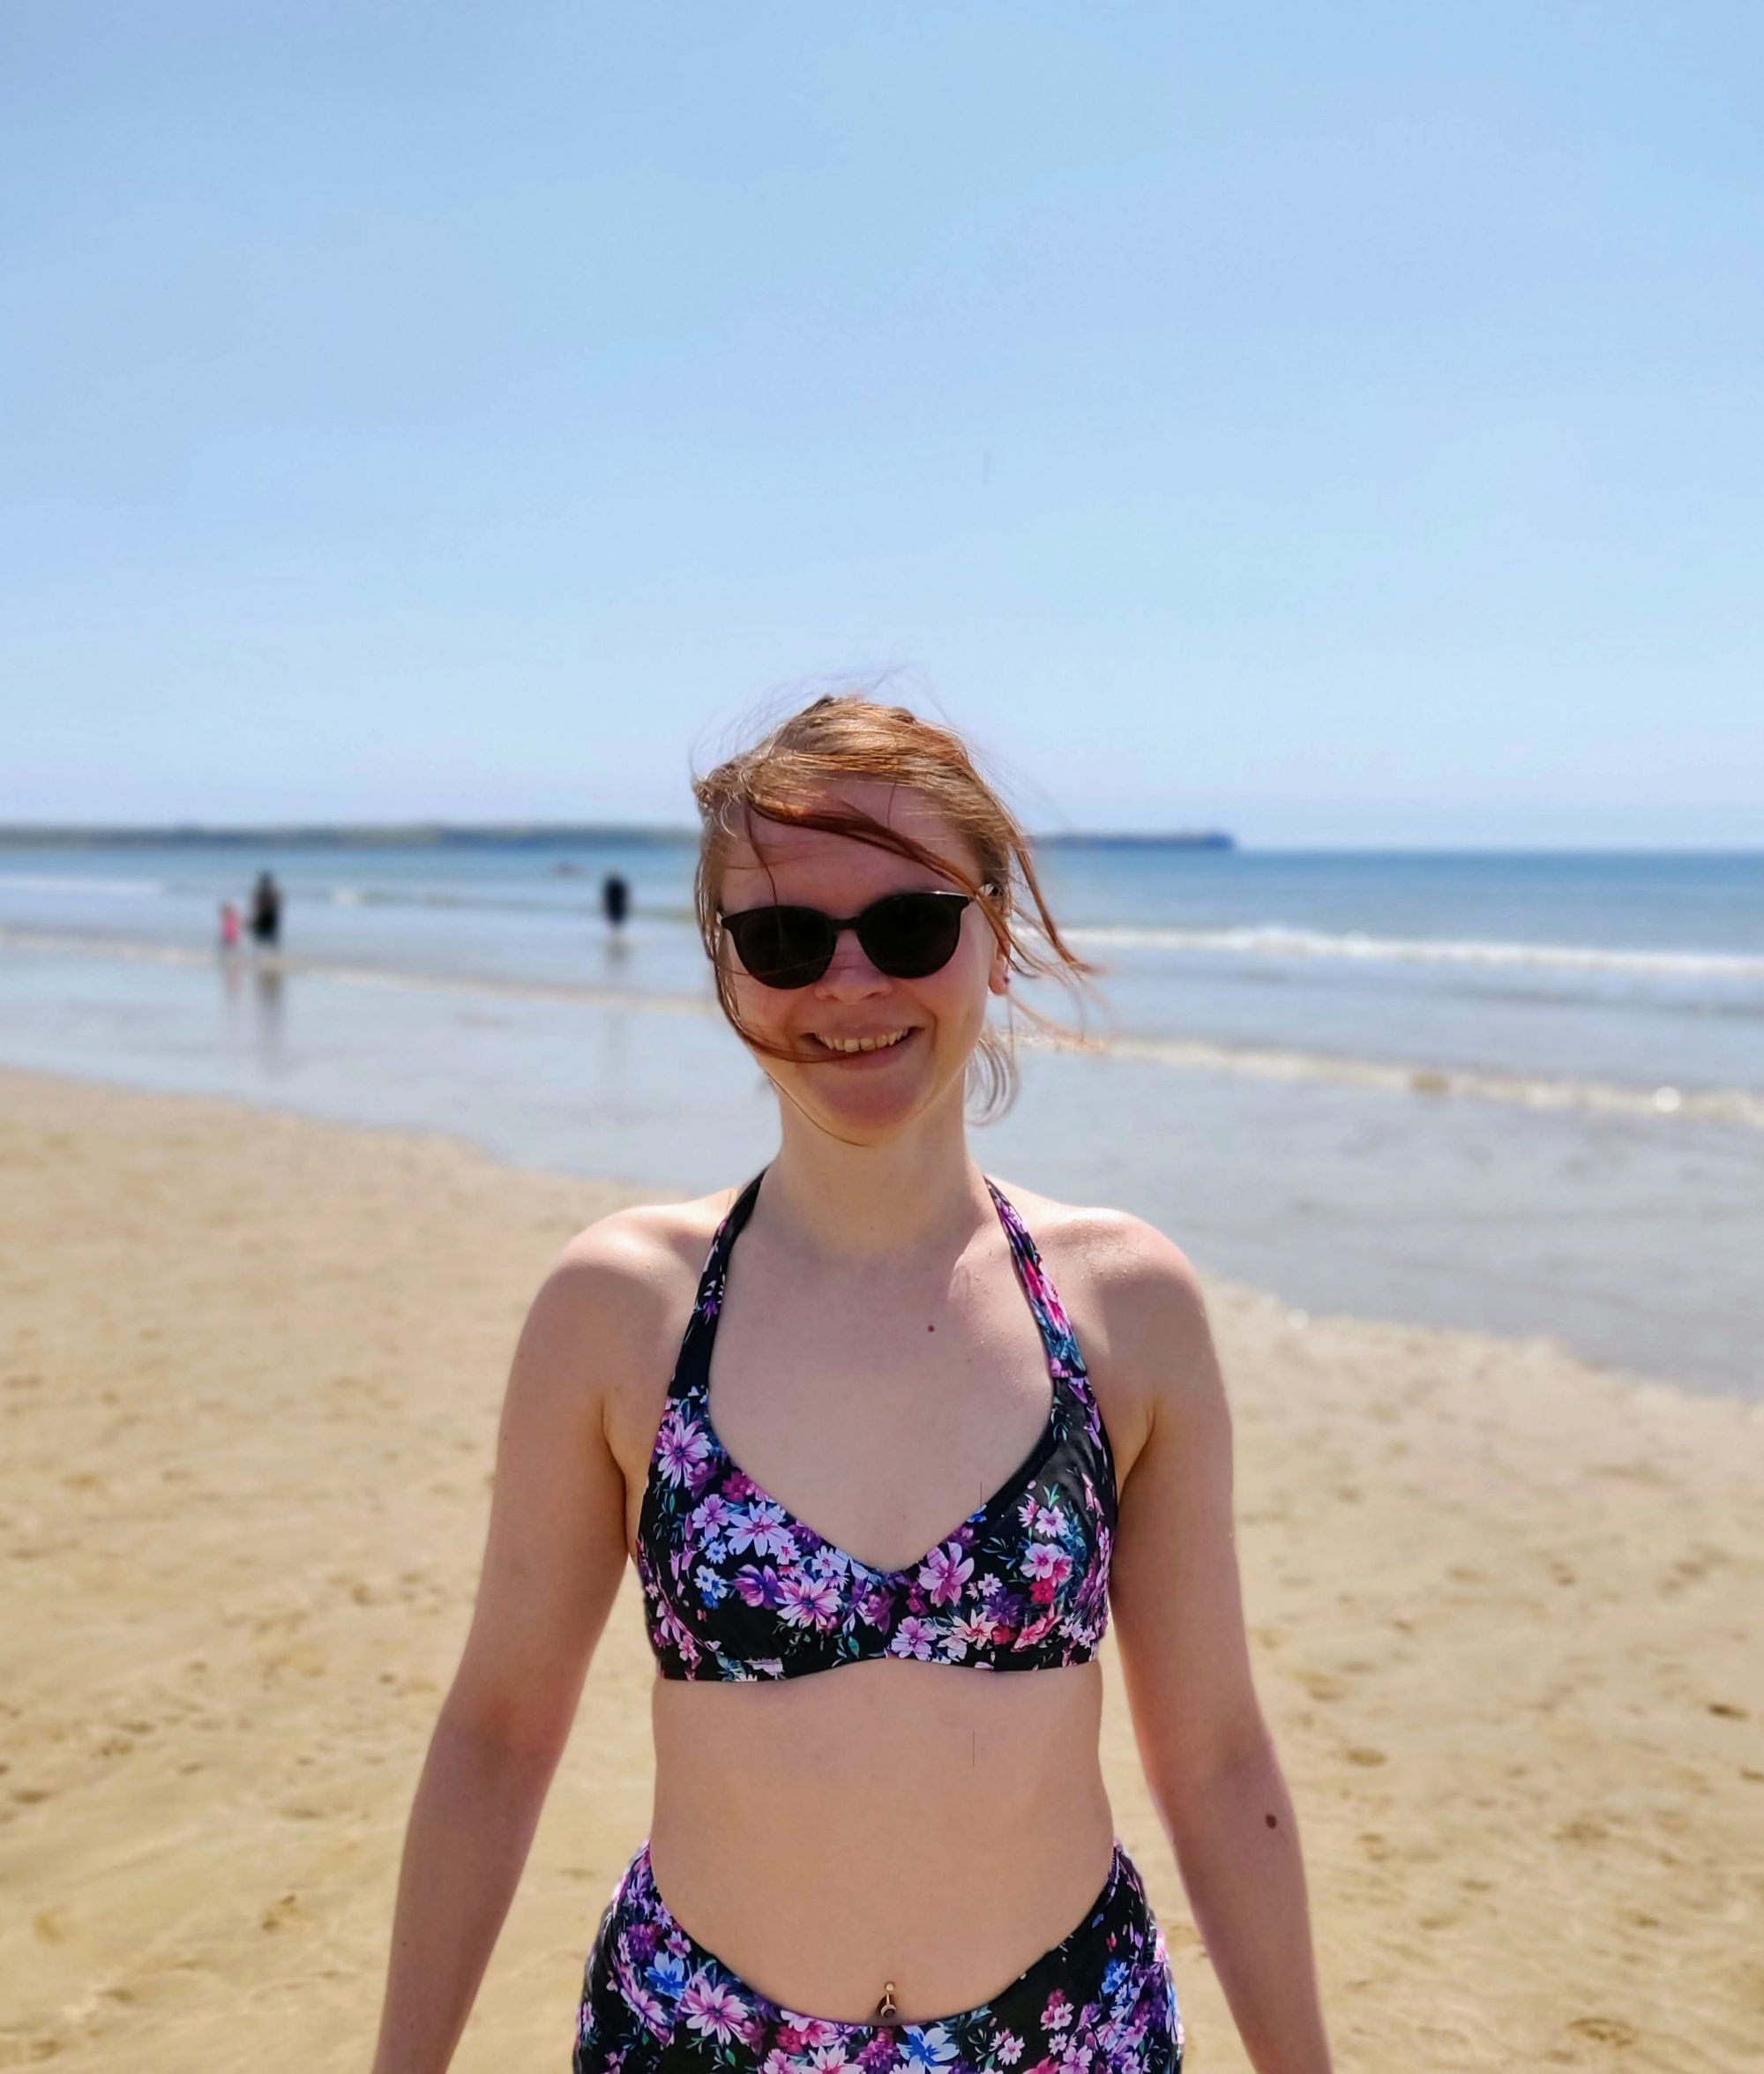 Autorka bloga w okularach przeciwsłonecznych i czarnym bikini w kwiatki stoi na plaży. Za nią widać morze i ludzi, chodzących po nim.